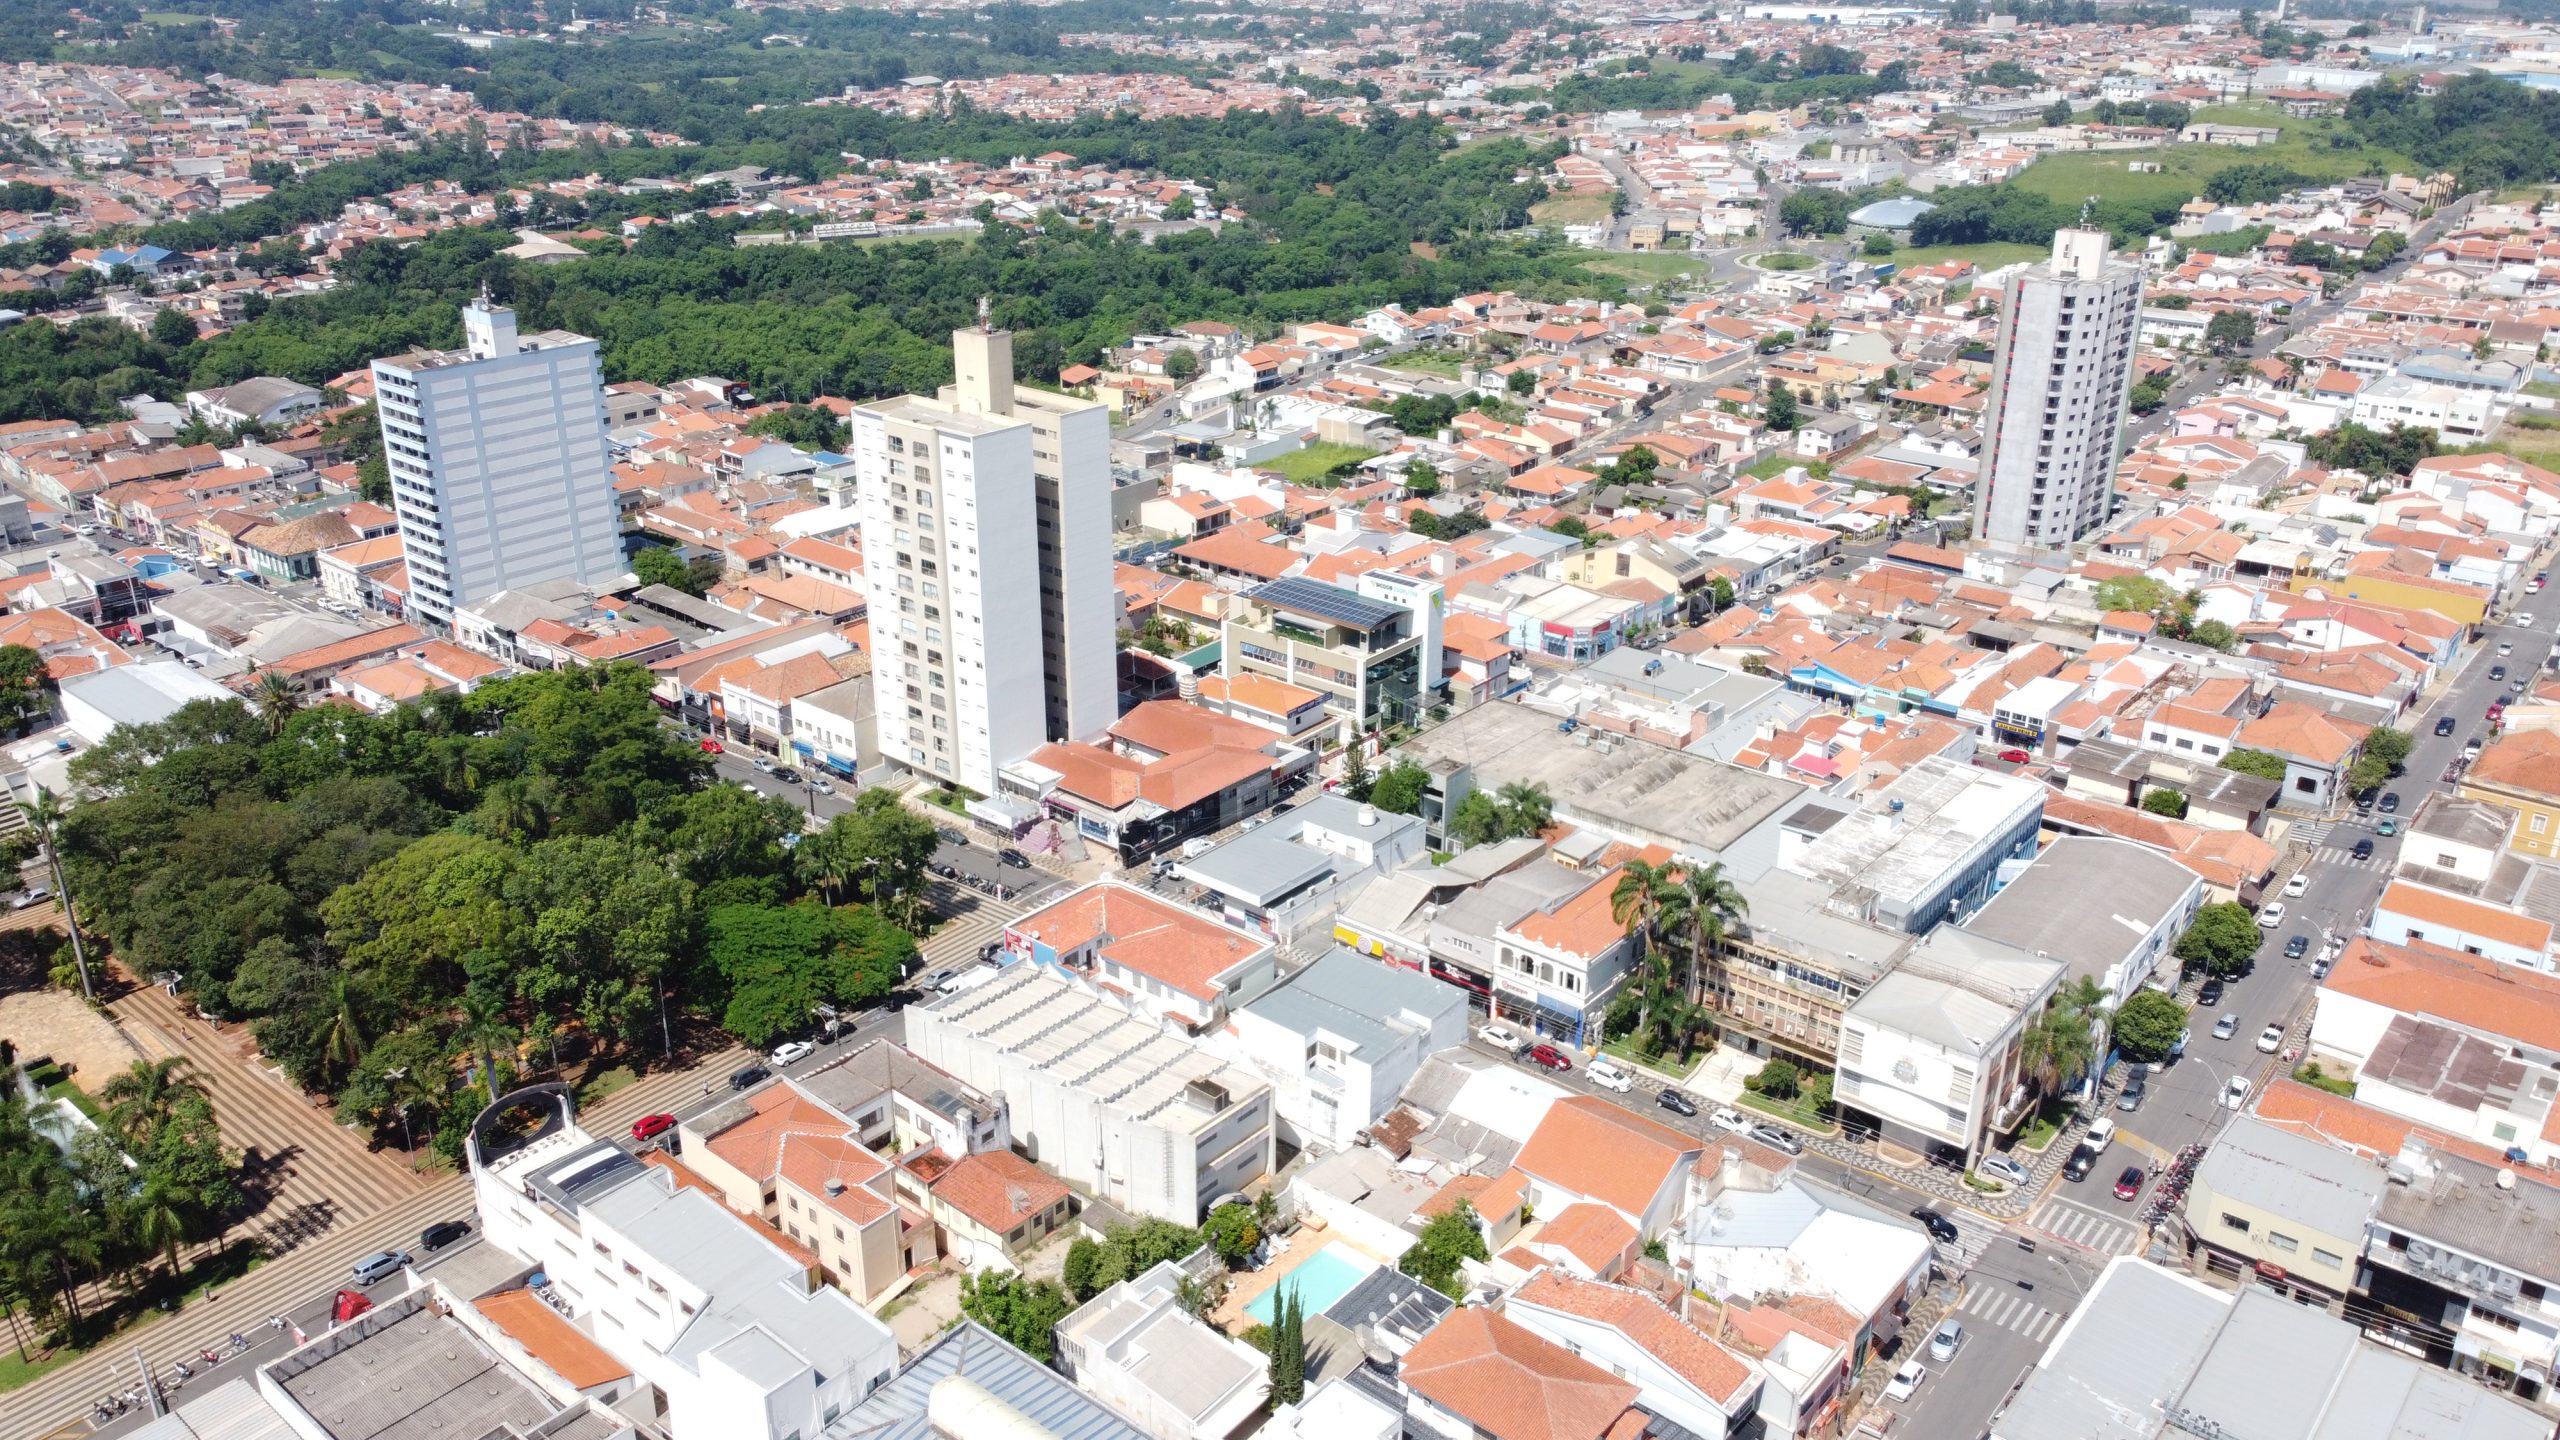 Cras Cidadania do bairro Engenho Velho será inaugurado no próximo dia 08 de julho